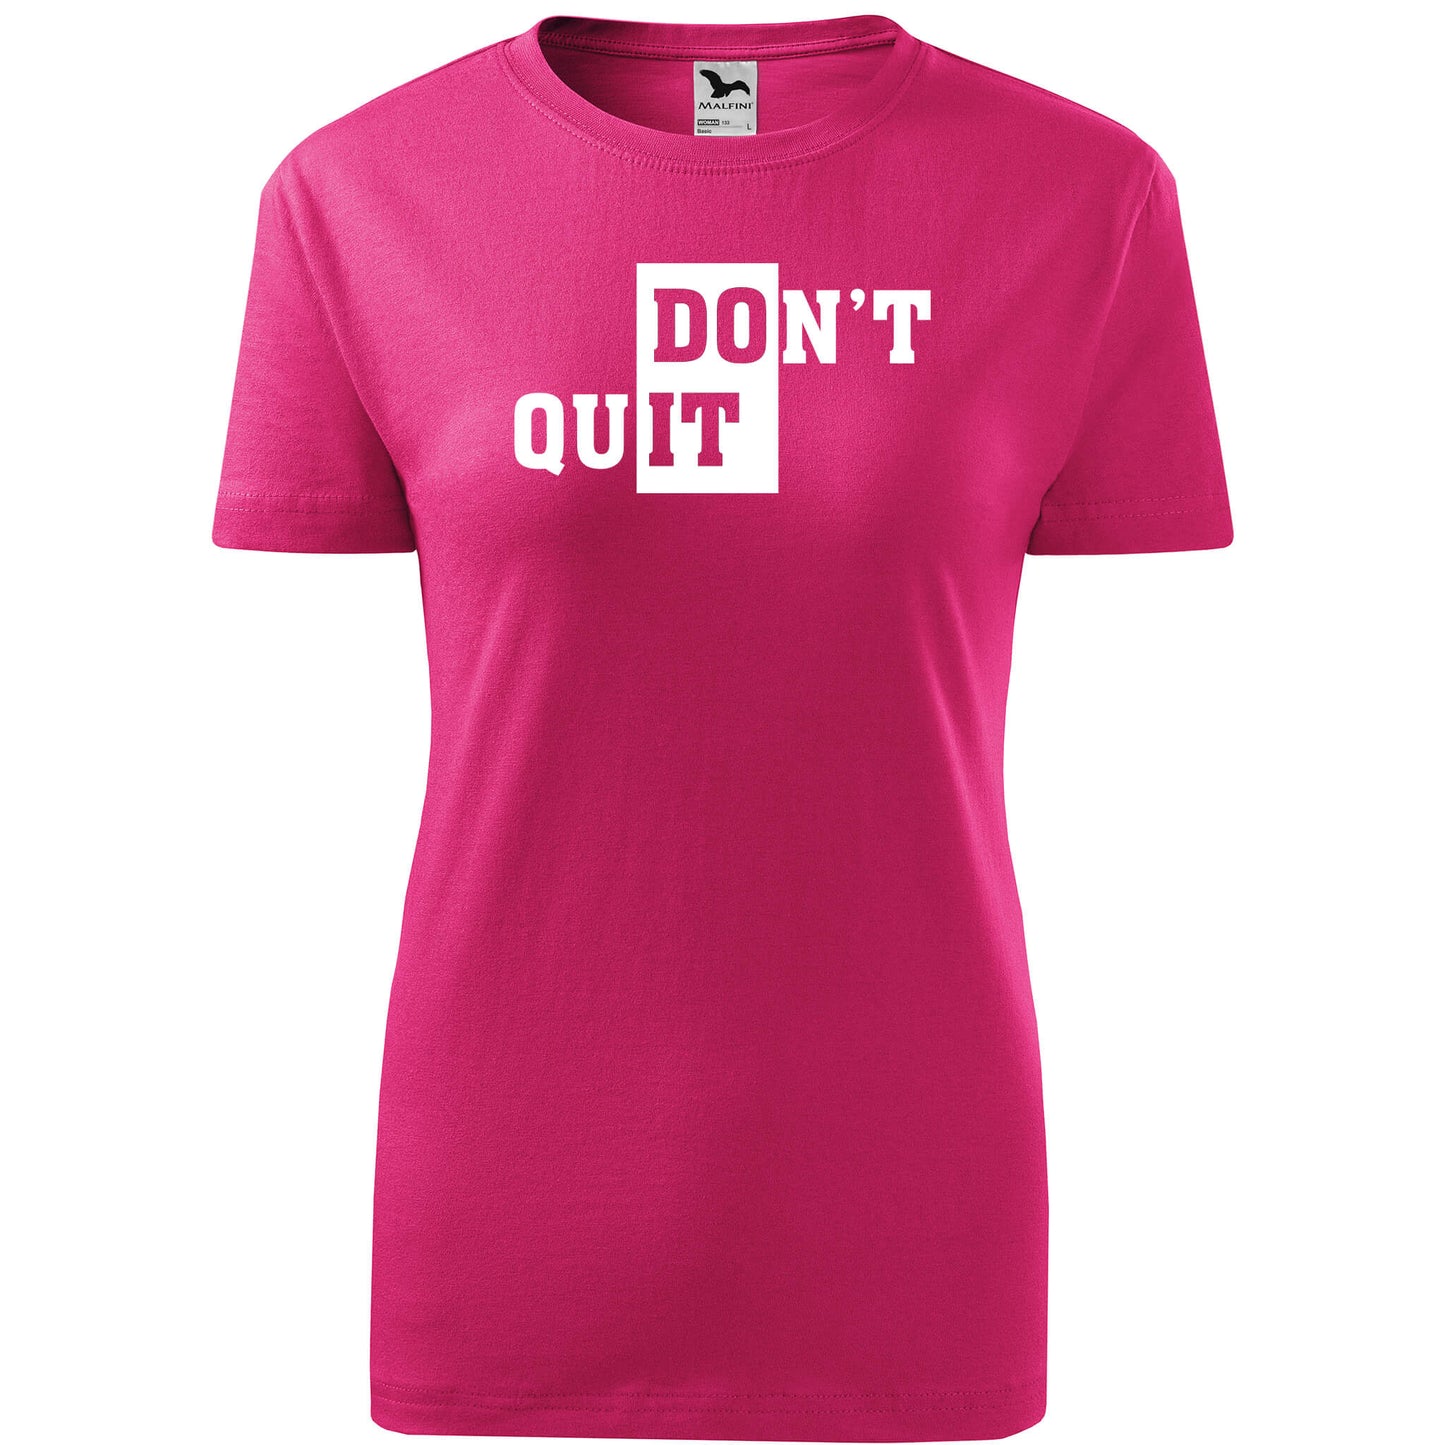 T-shirt - DOn't quIT - rvdesignprint